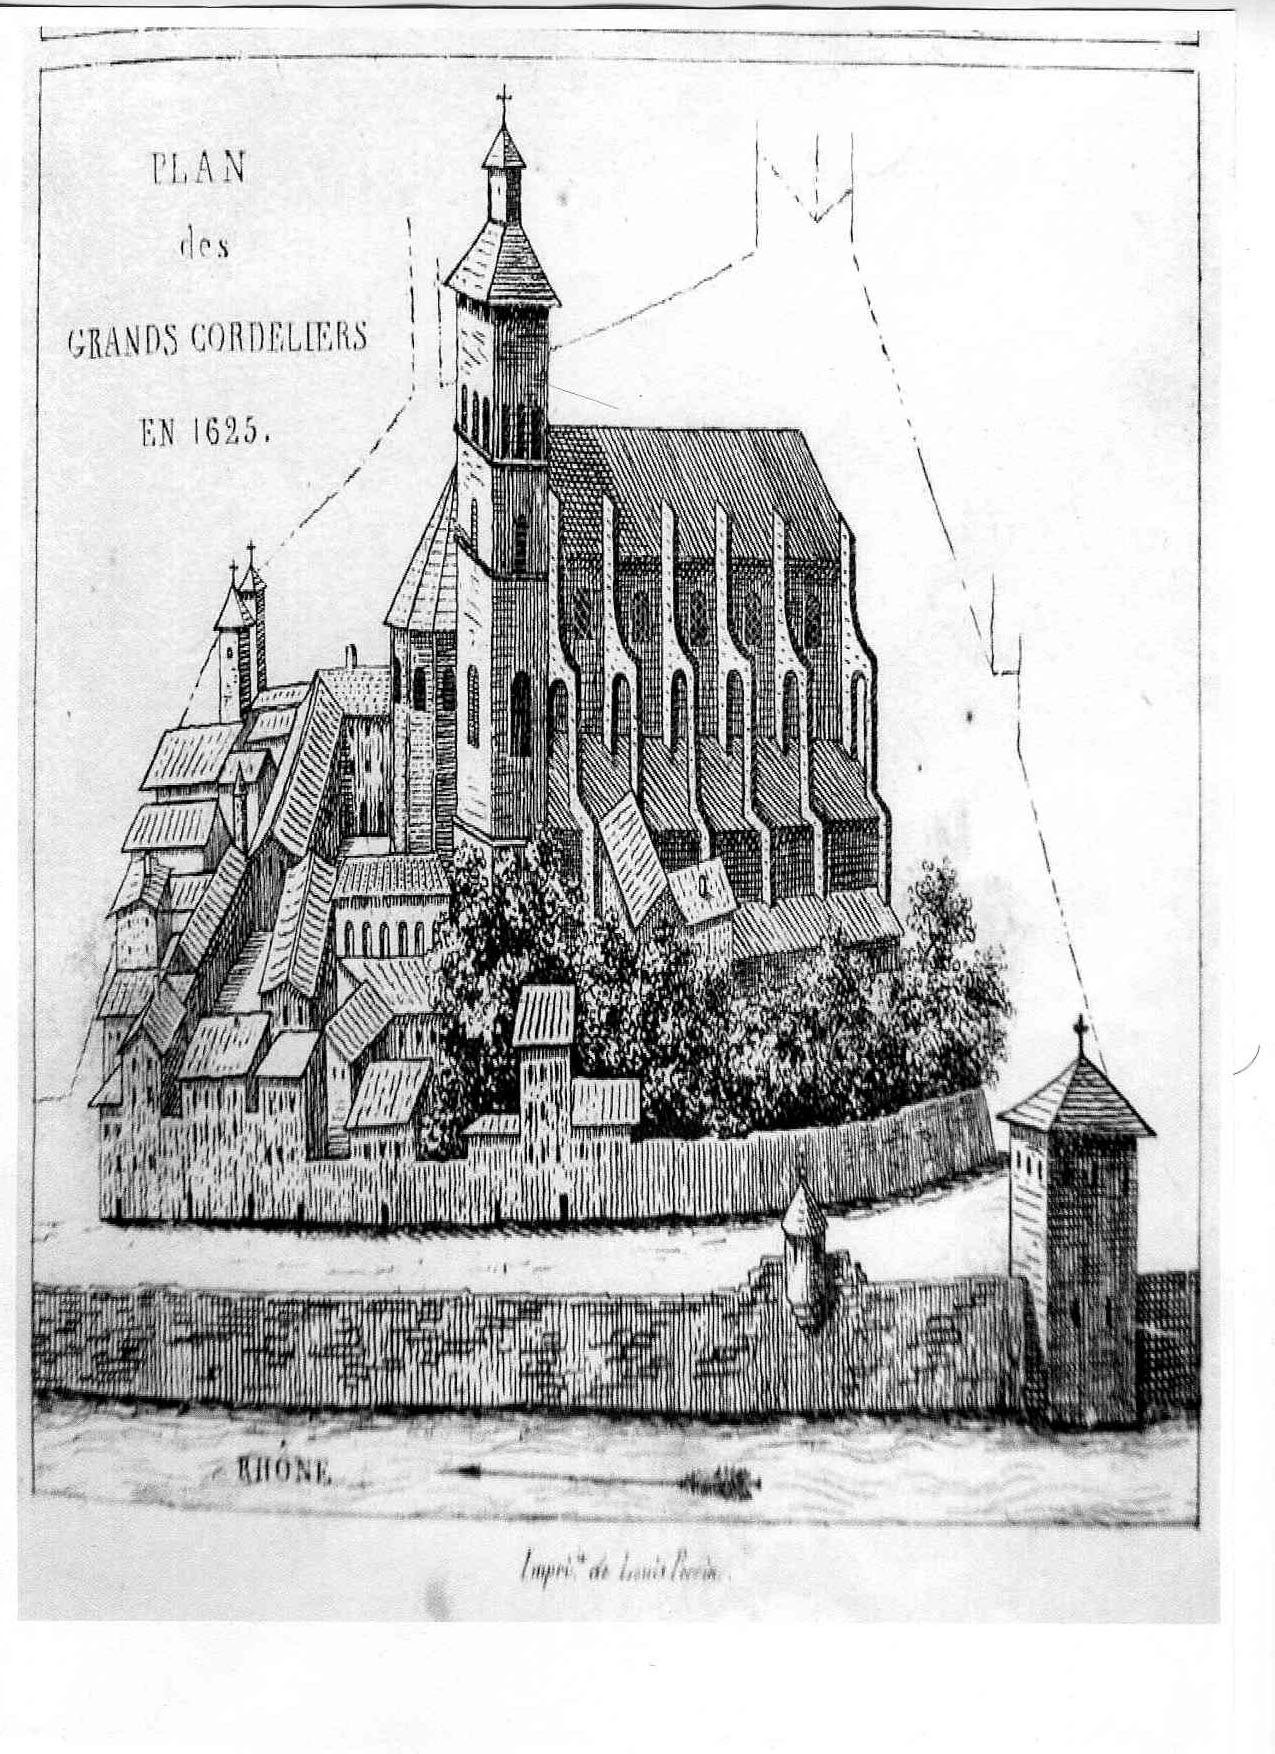 Photographie : plan des Grands Cordeliers, 1625